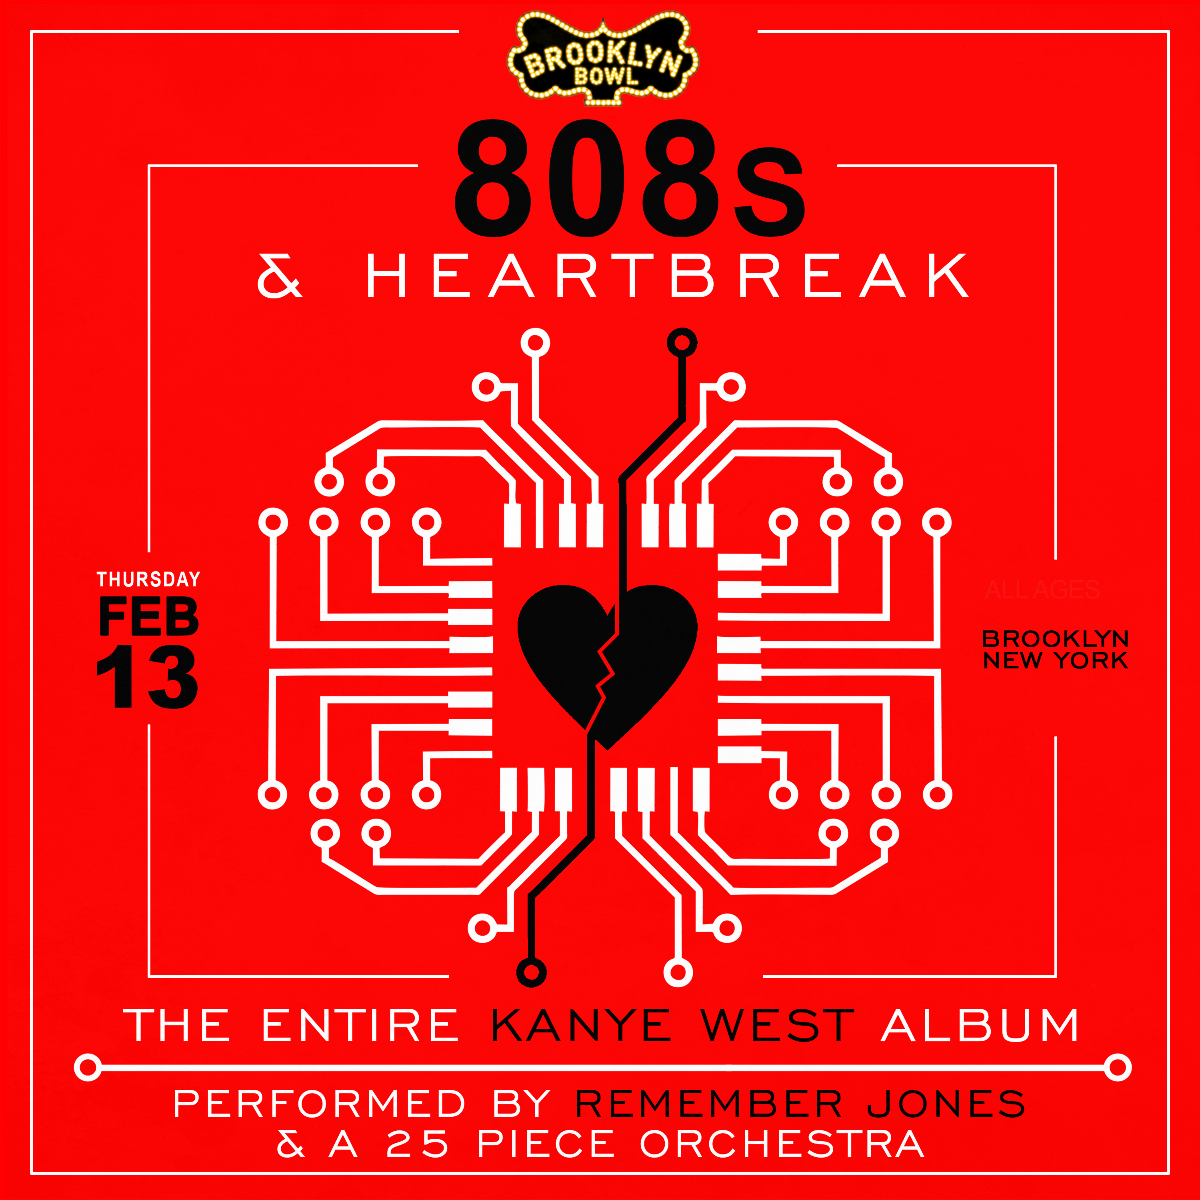 808s and heartbreak metacritic